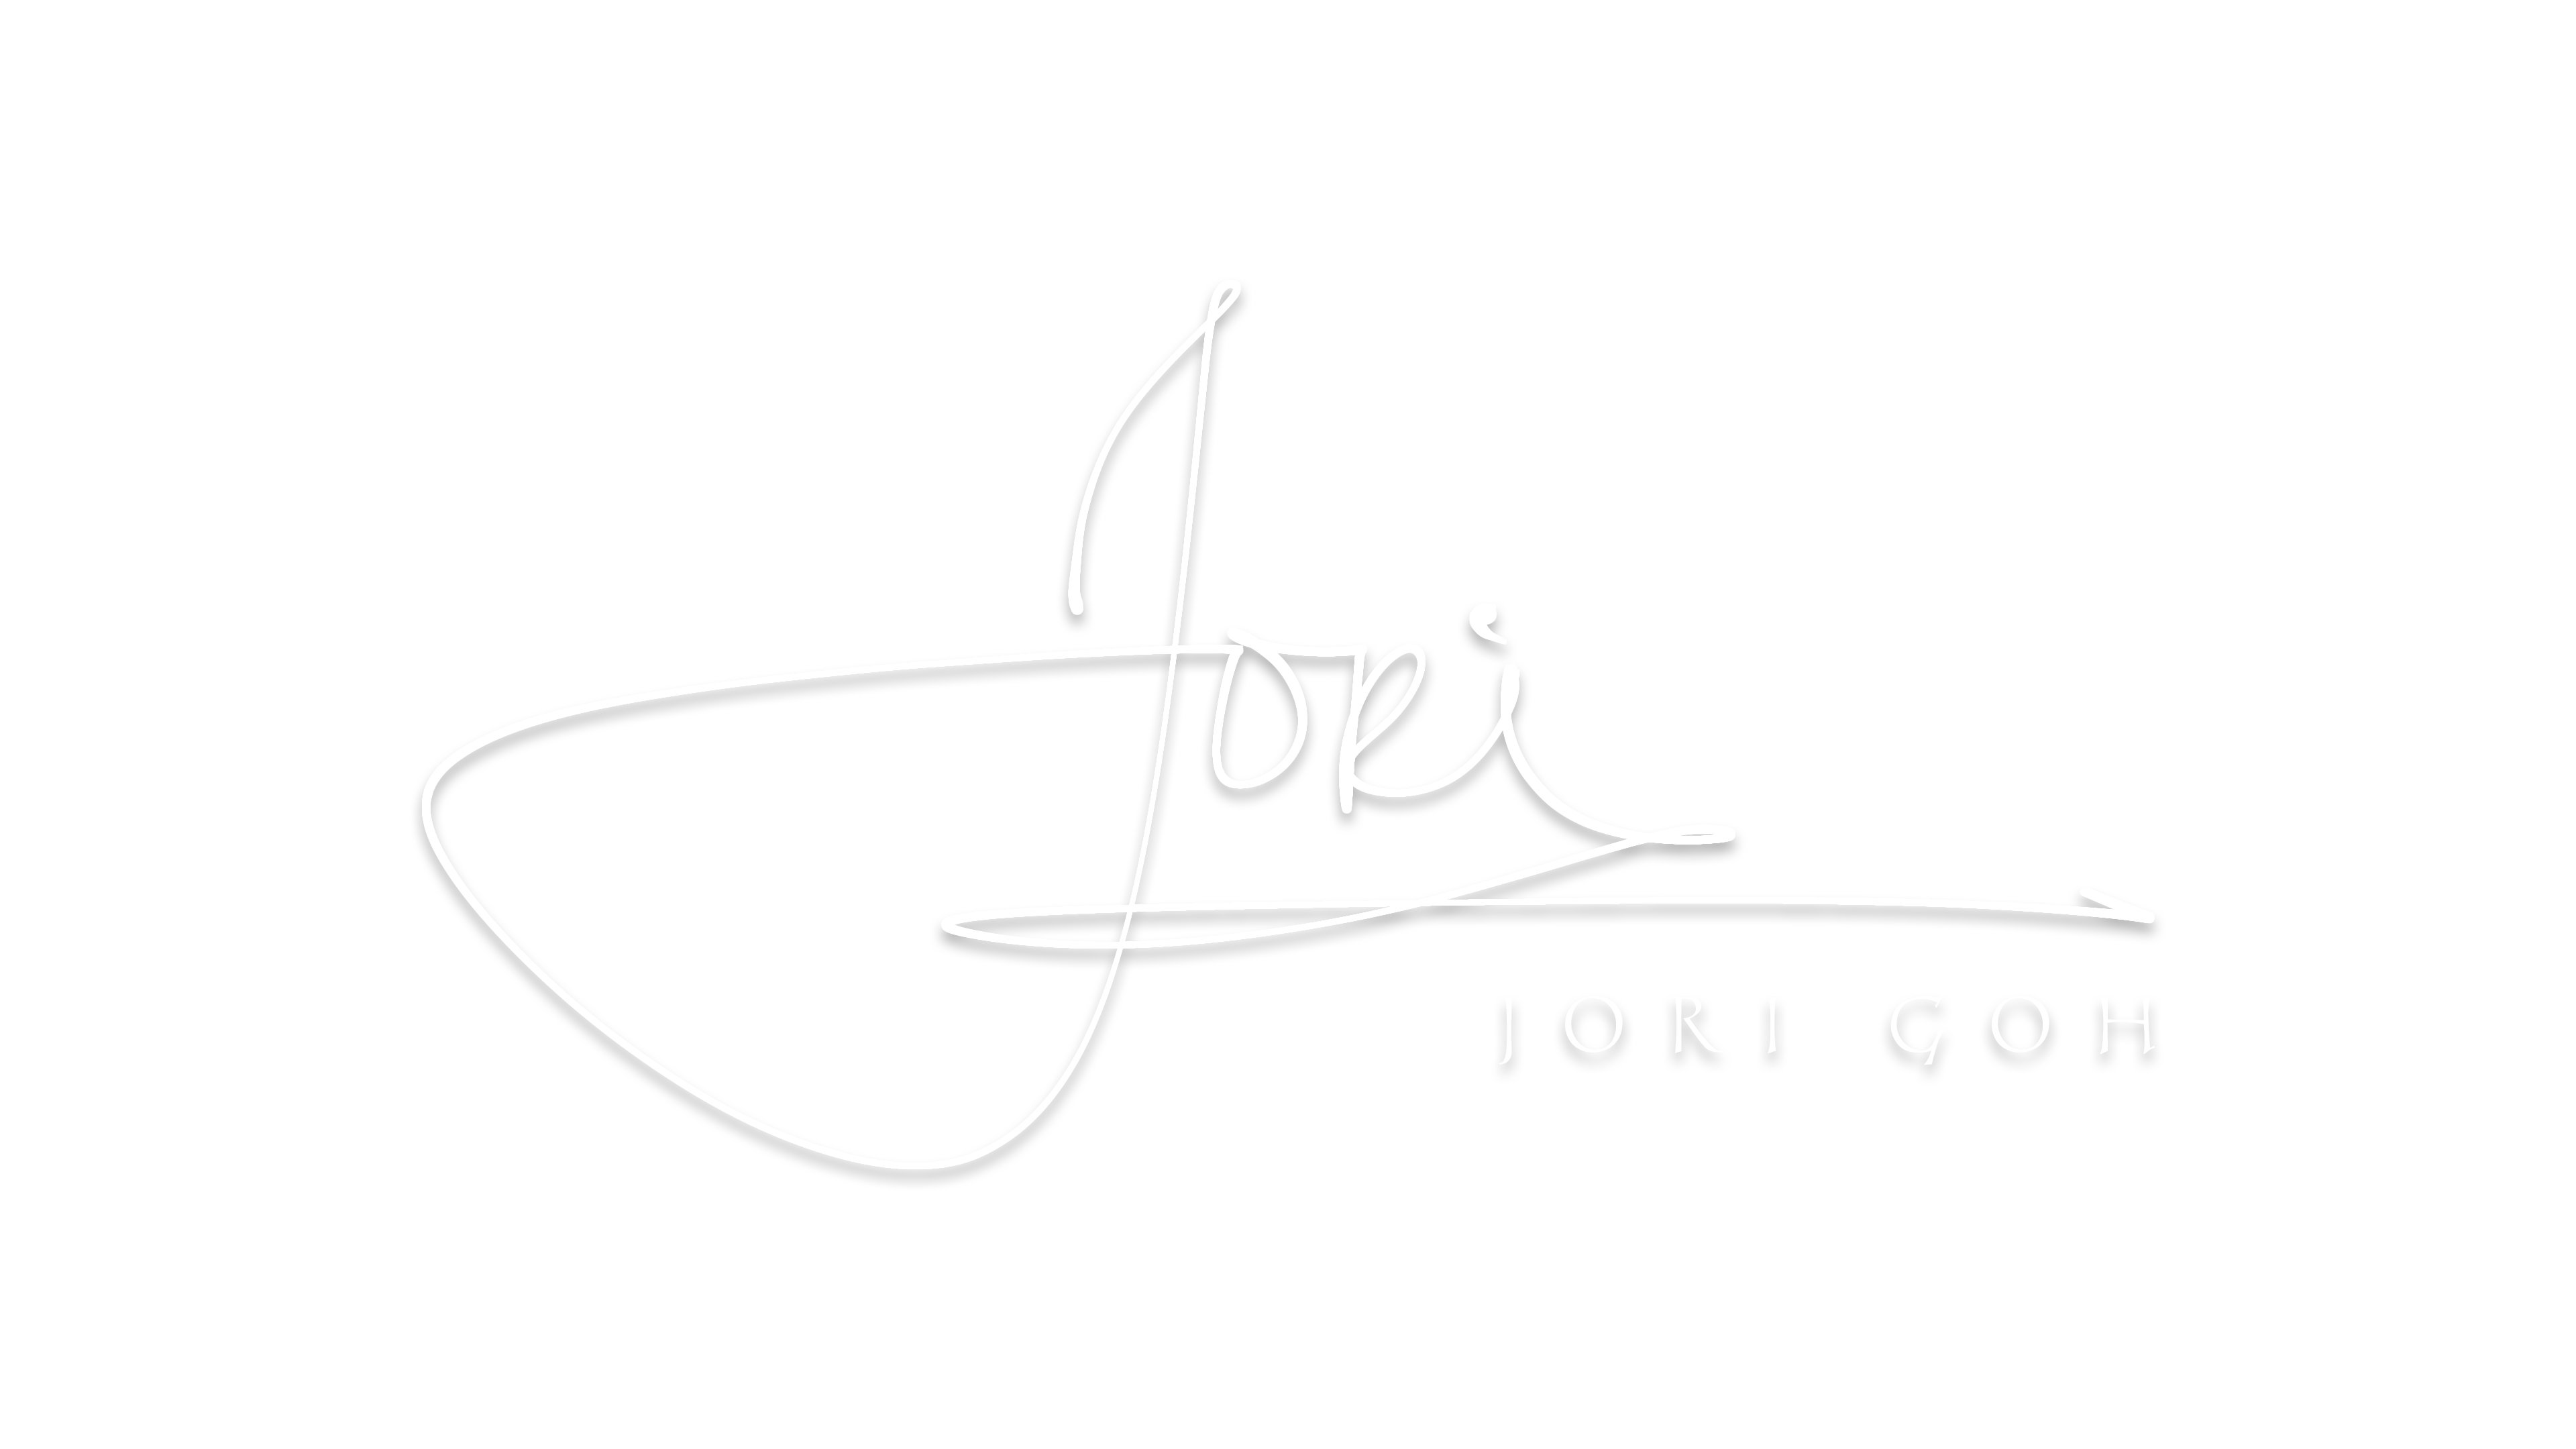 Jori Goh Photography